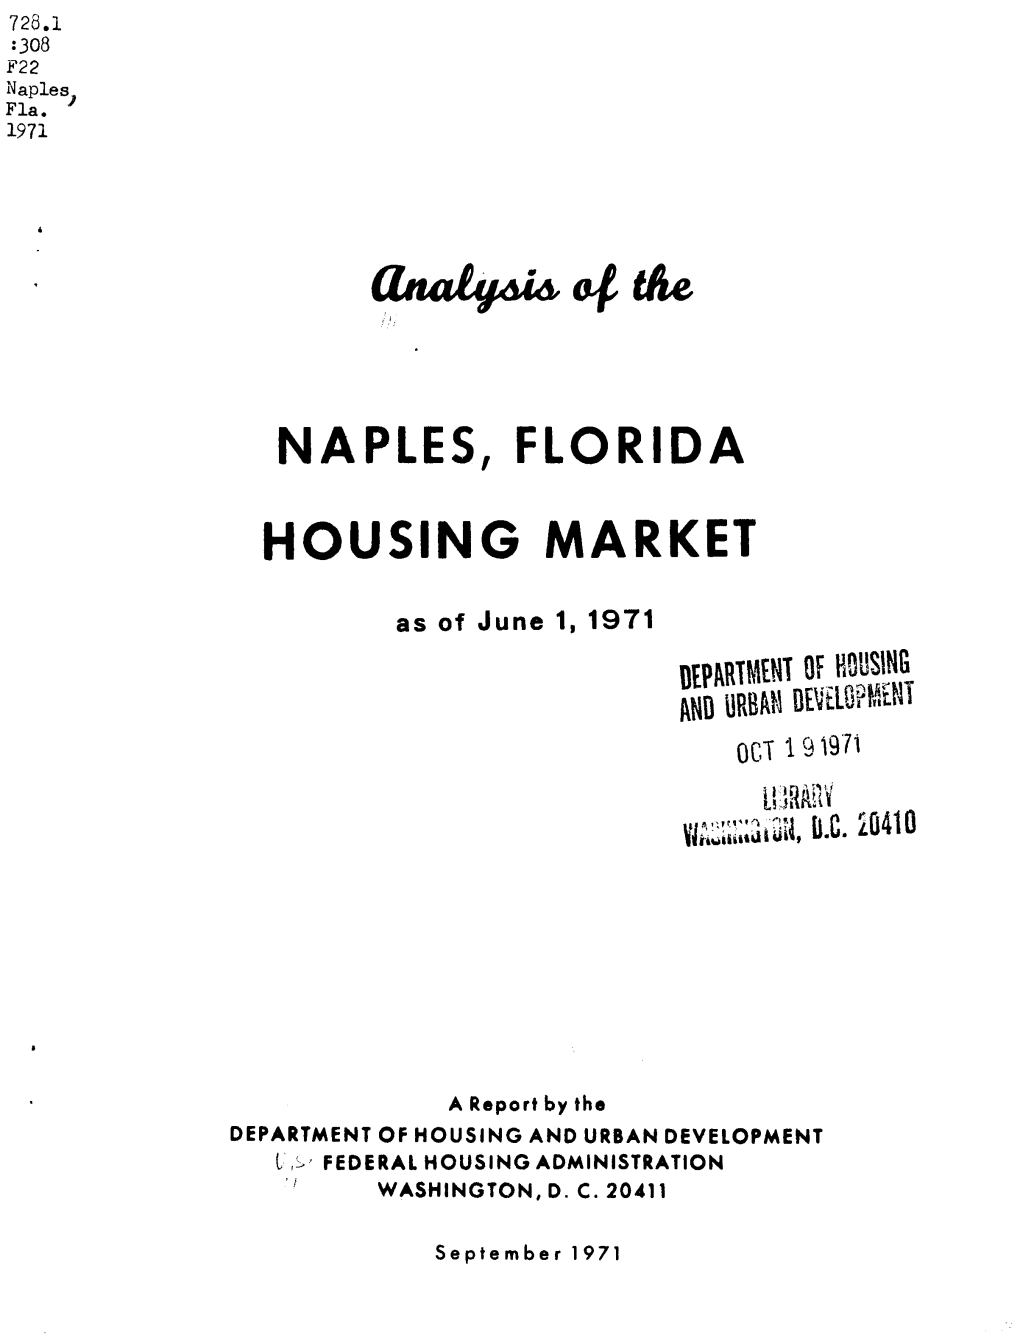 Analysis of the Naples Florida Housing Market As